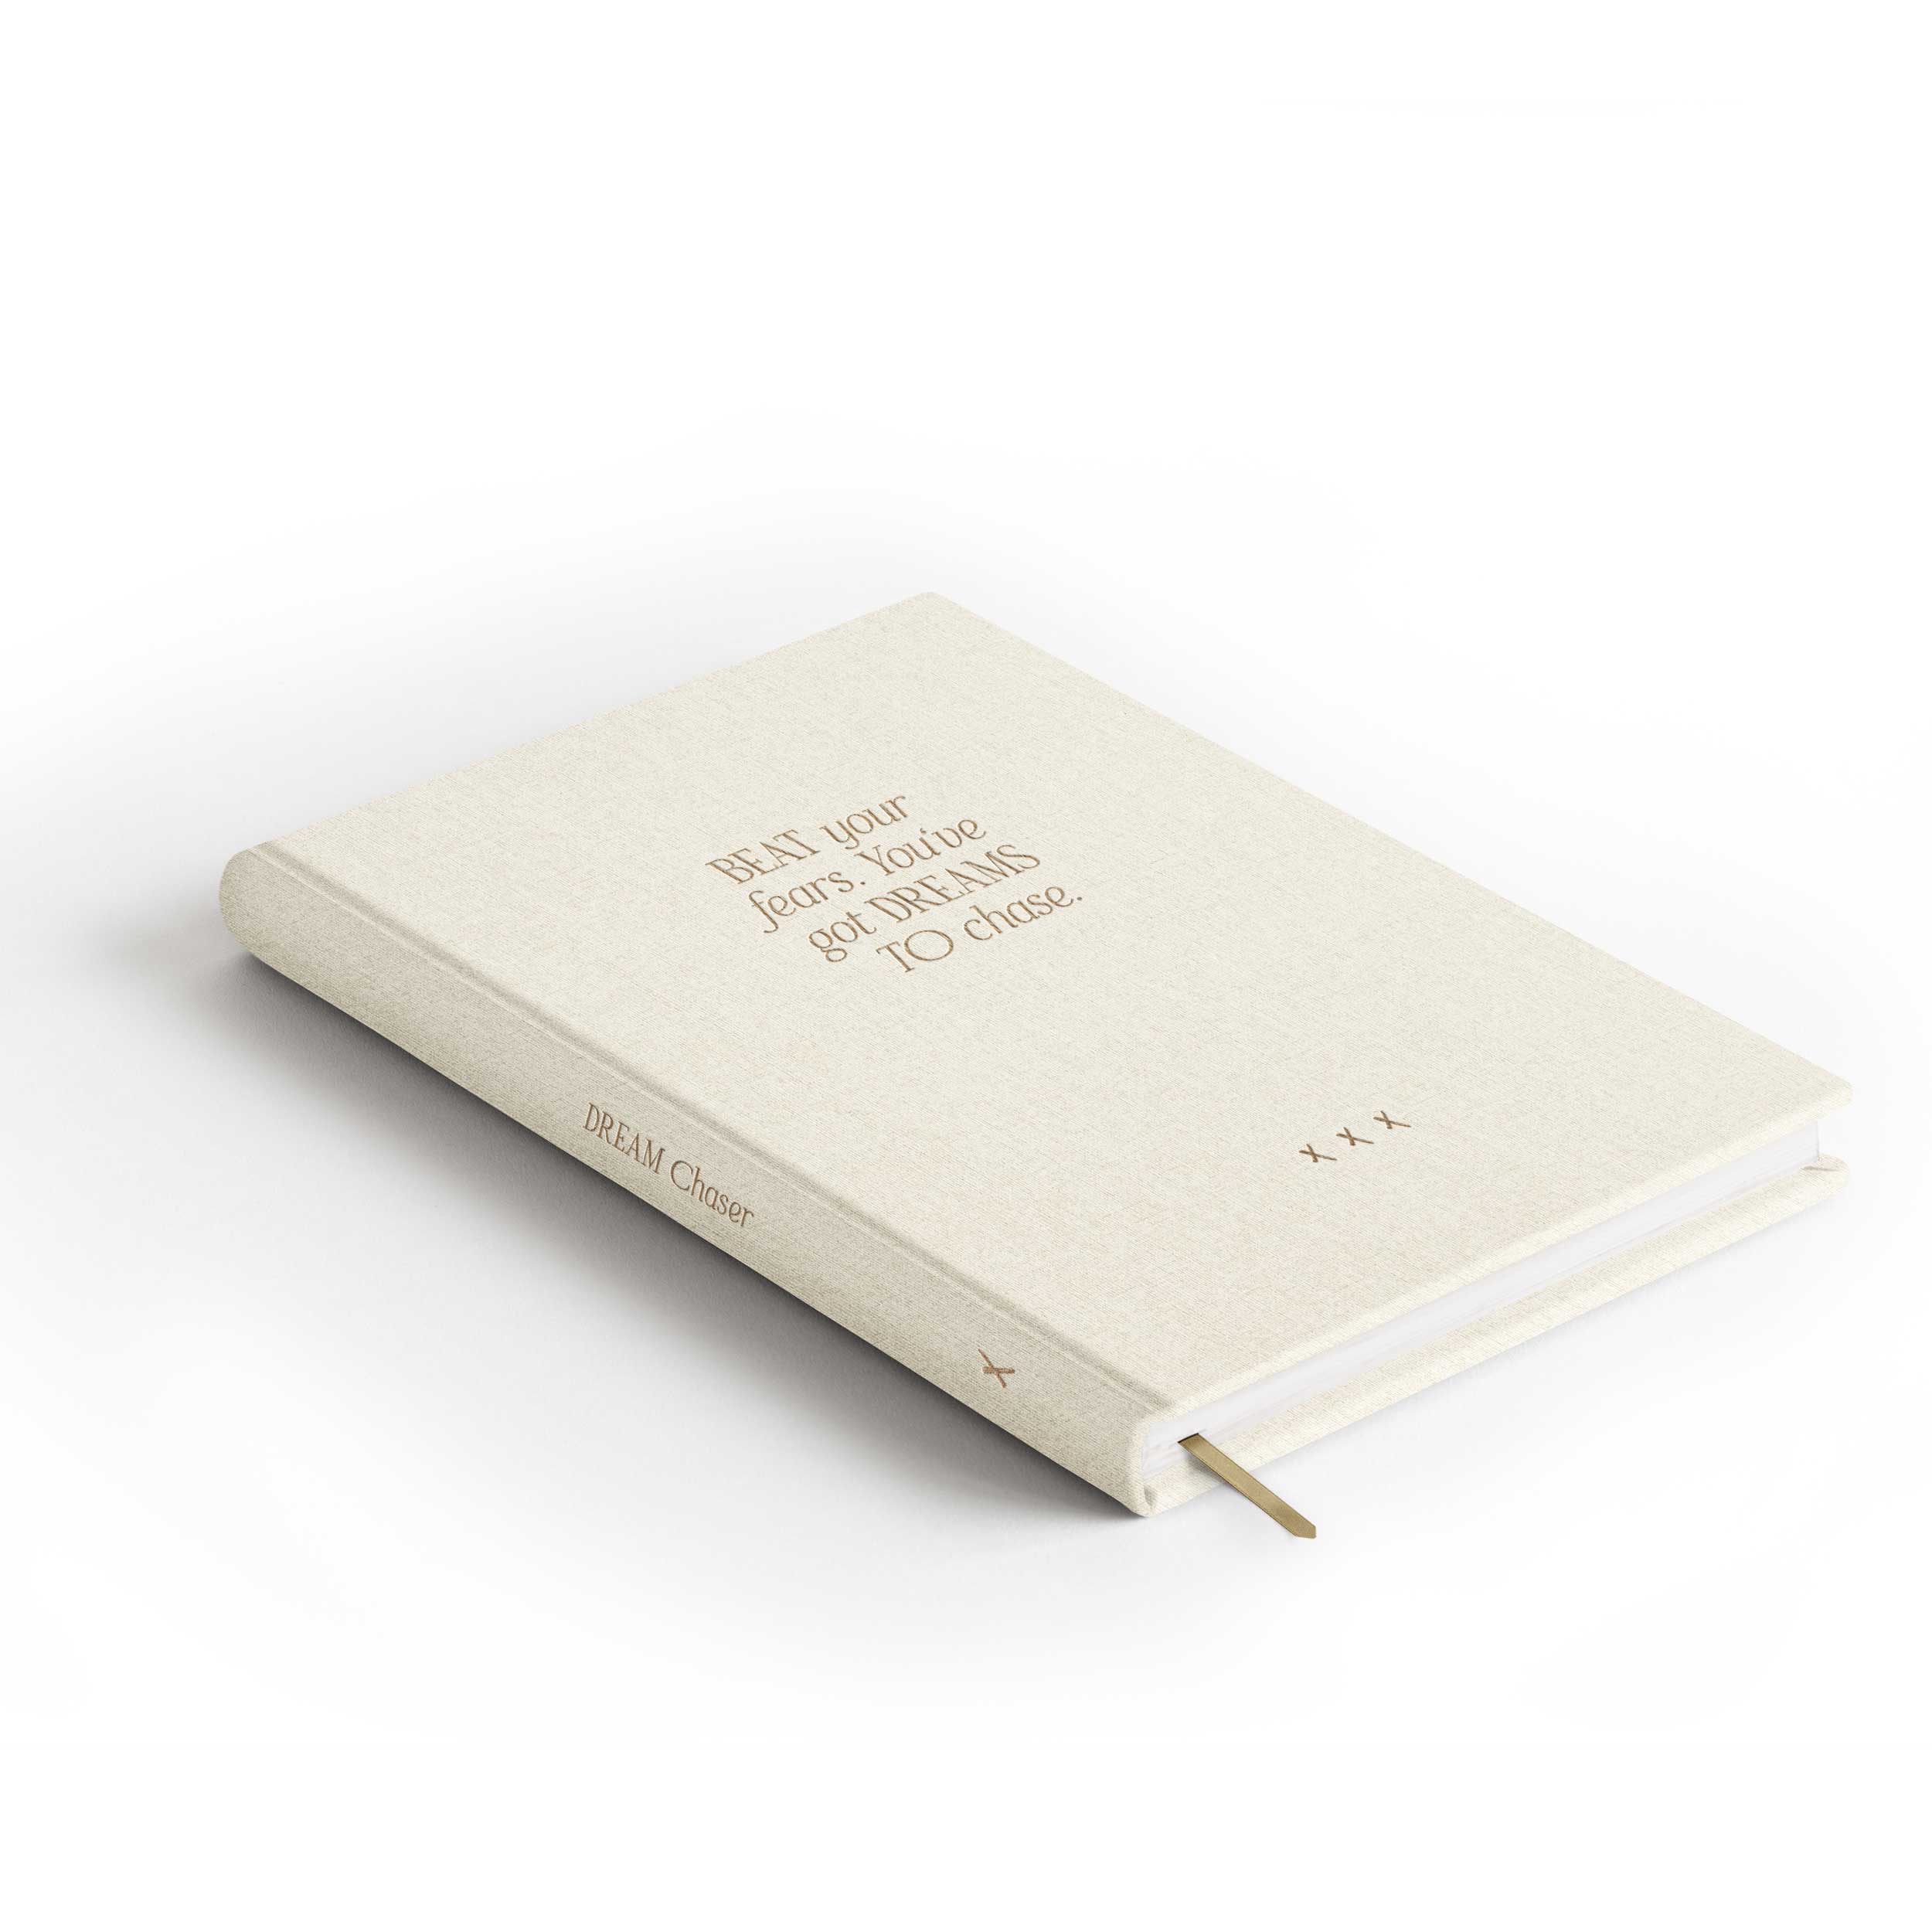 Notizbuch "Dream Chaser", A5, Off-White / gold, weiße Seiten, Leinencover